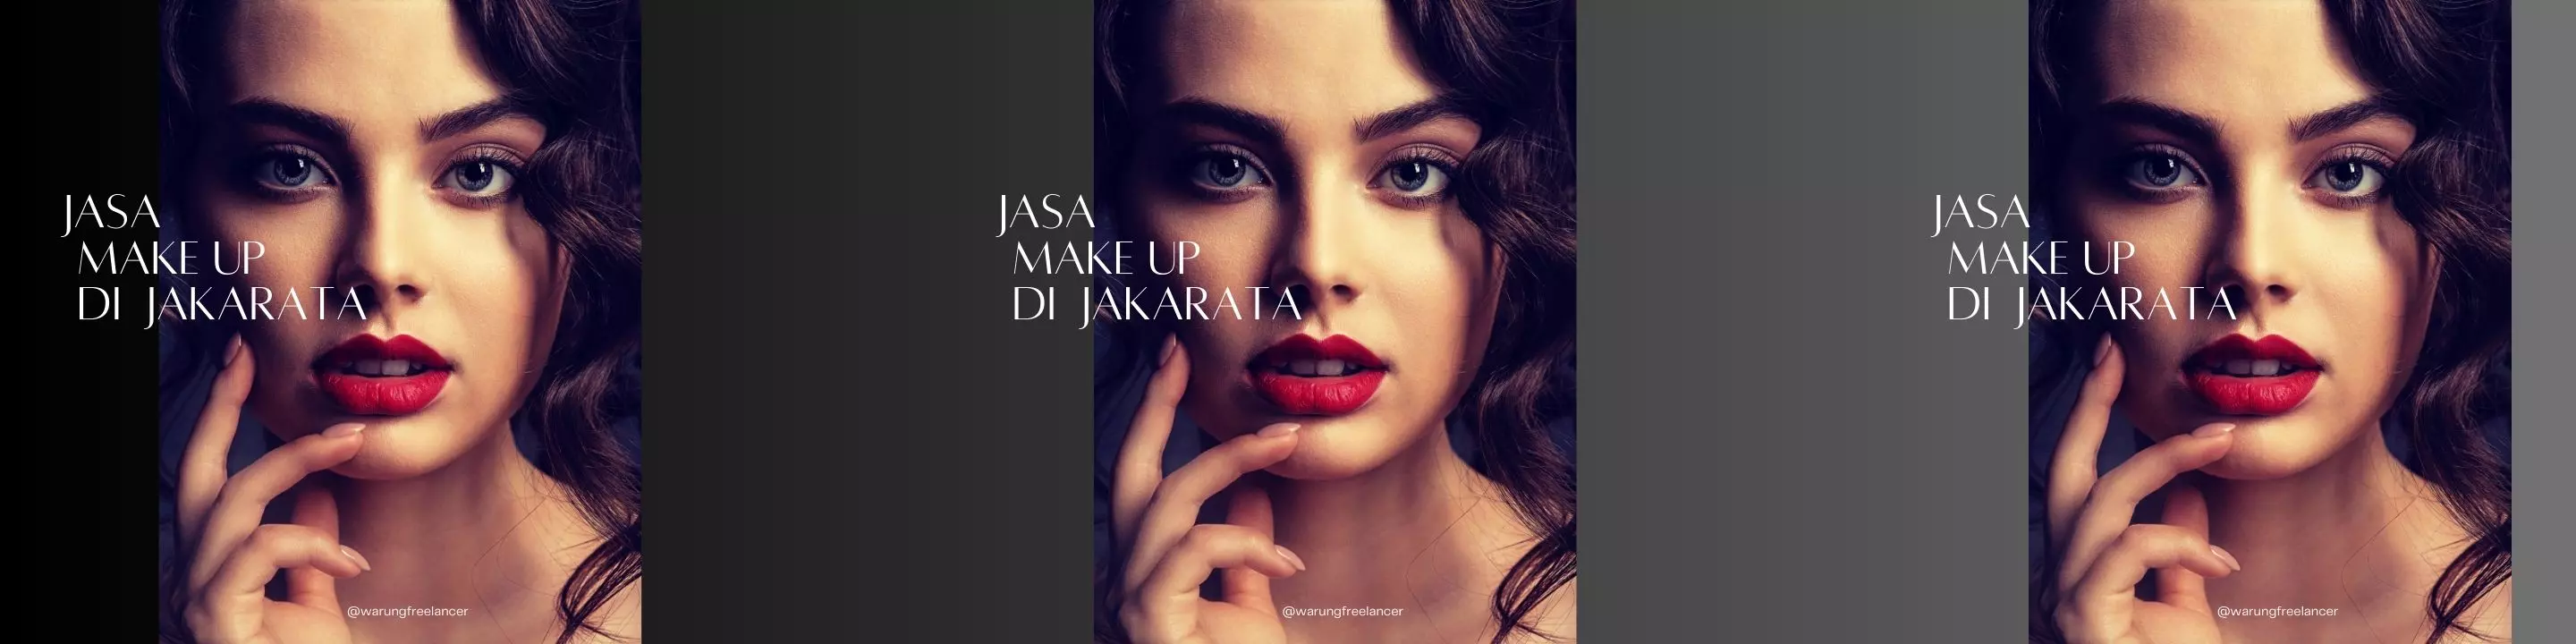 Jasa Make Up di Jakarta